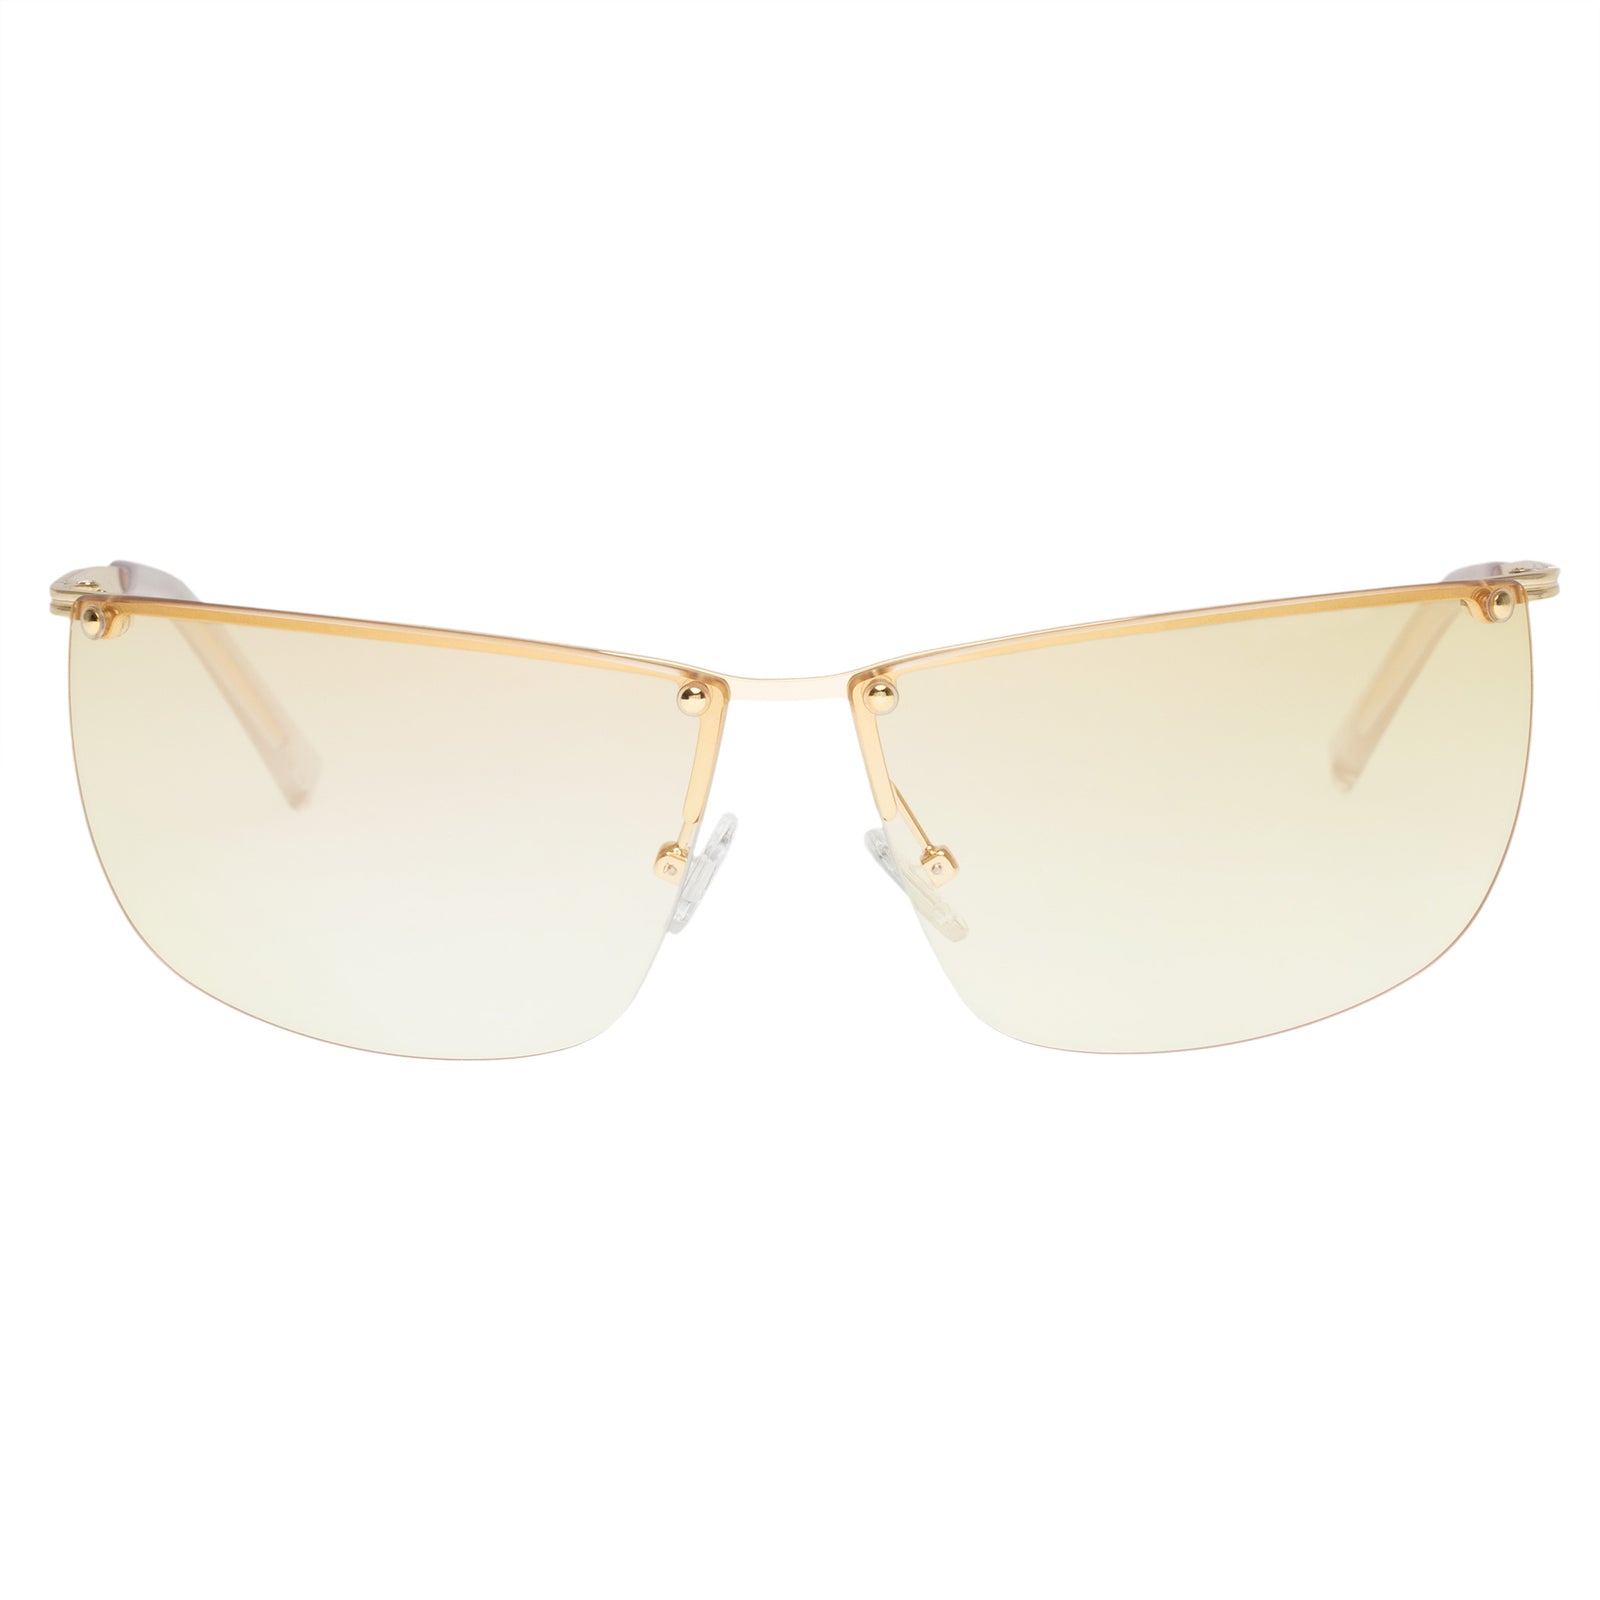 Le Specs - Y2Ok, Wrap Sunglasses, Gold, Large